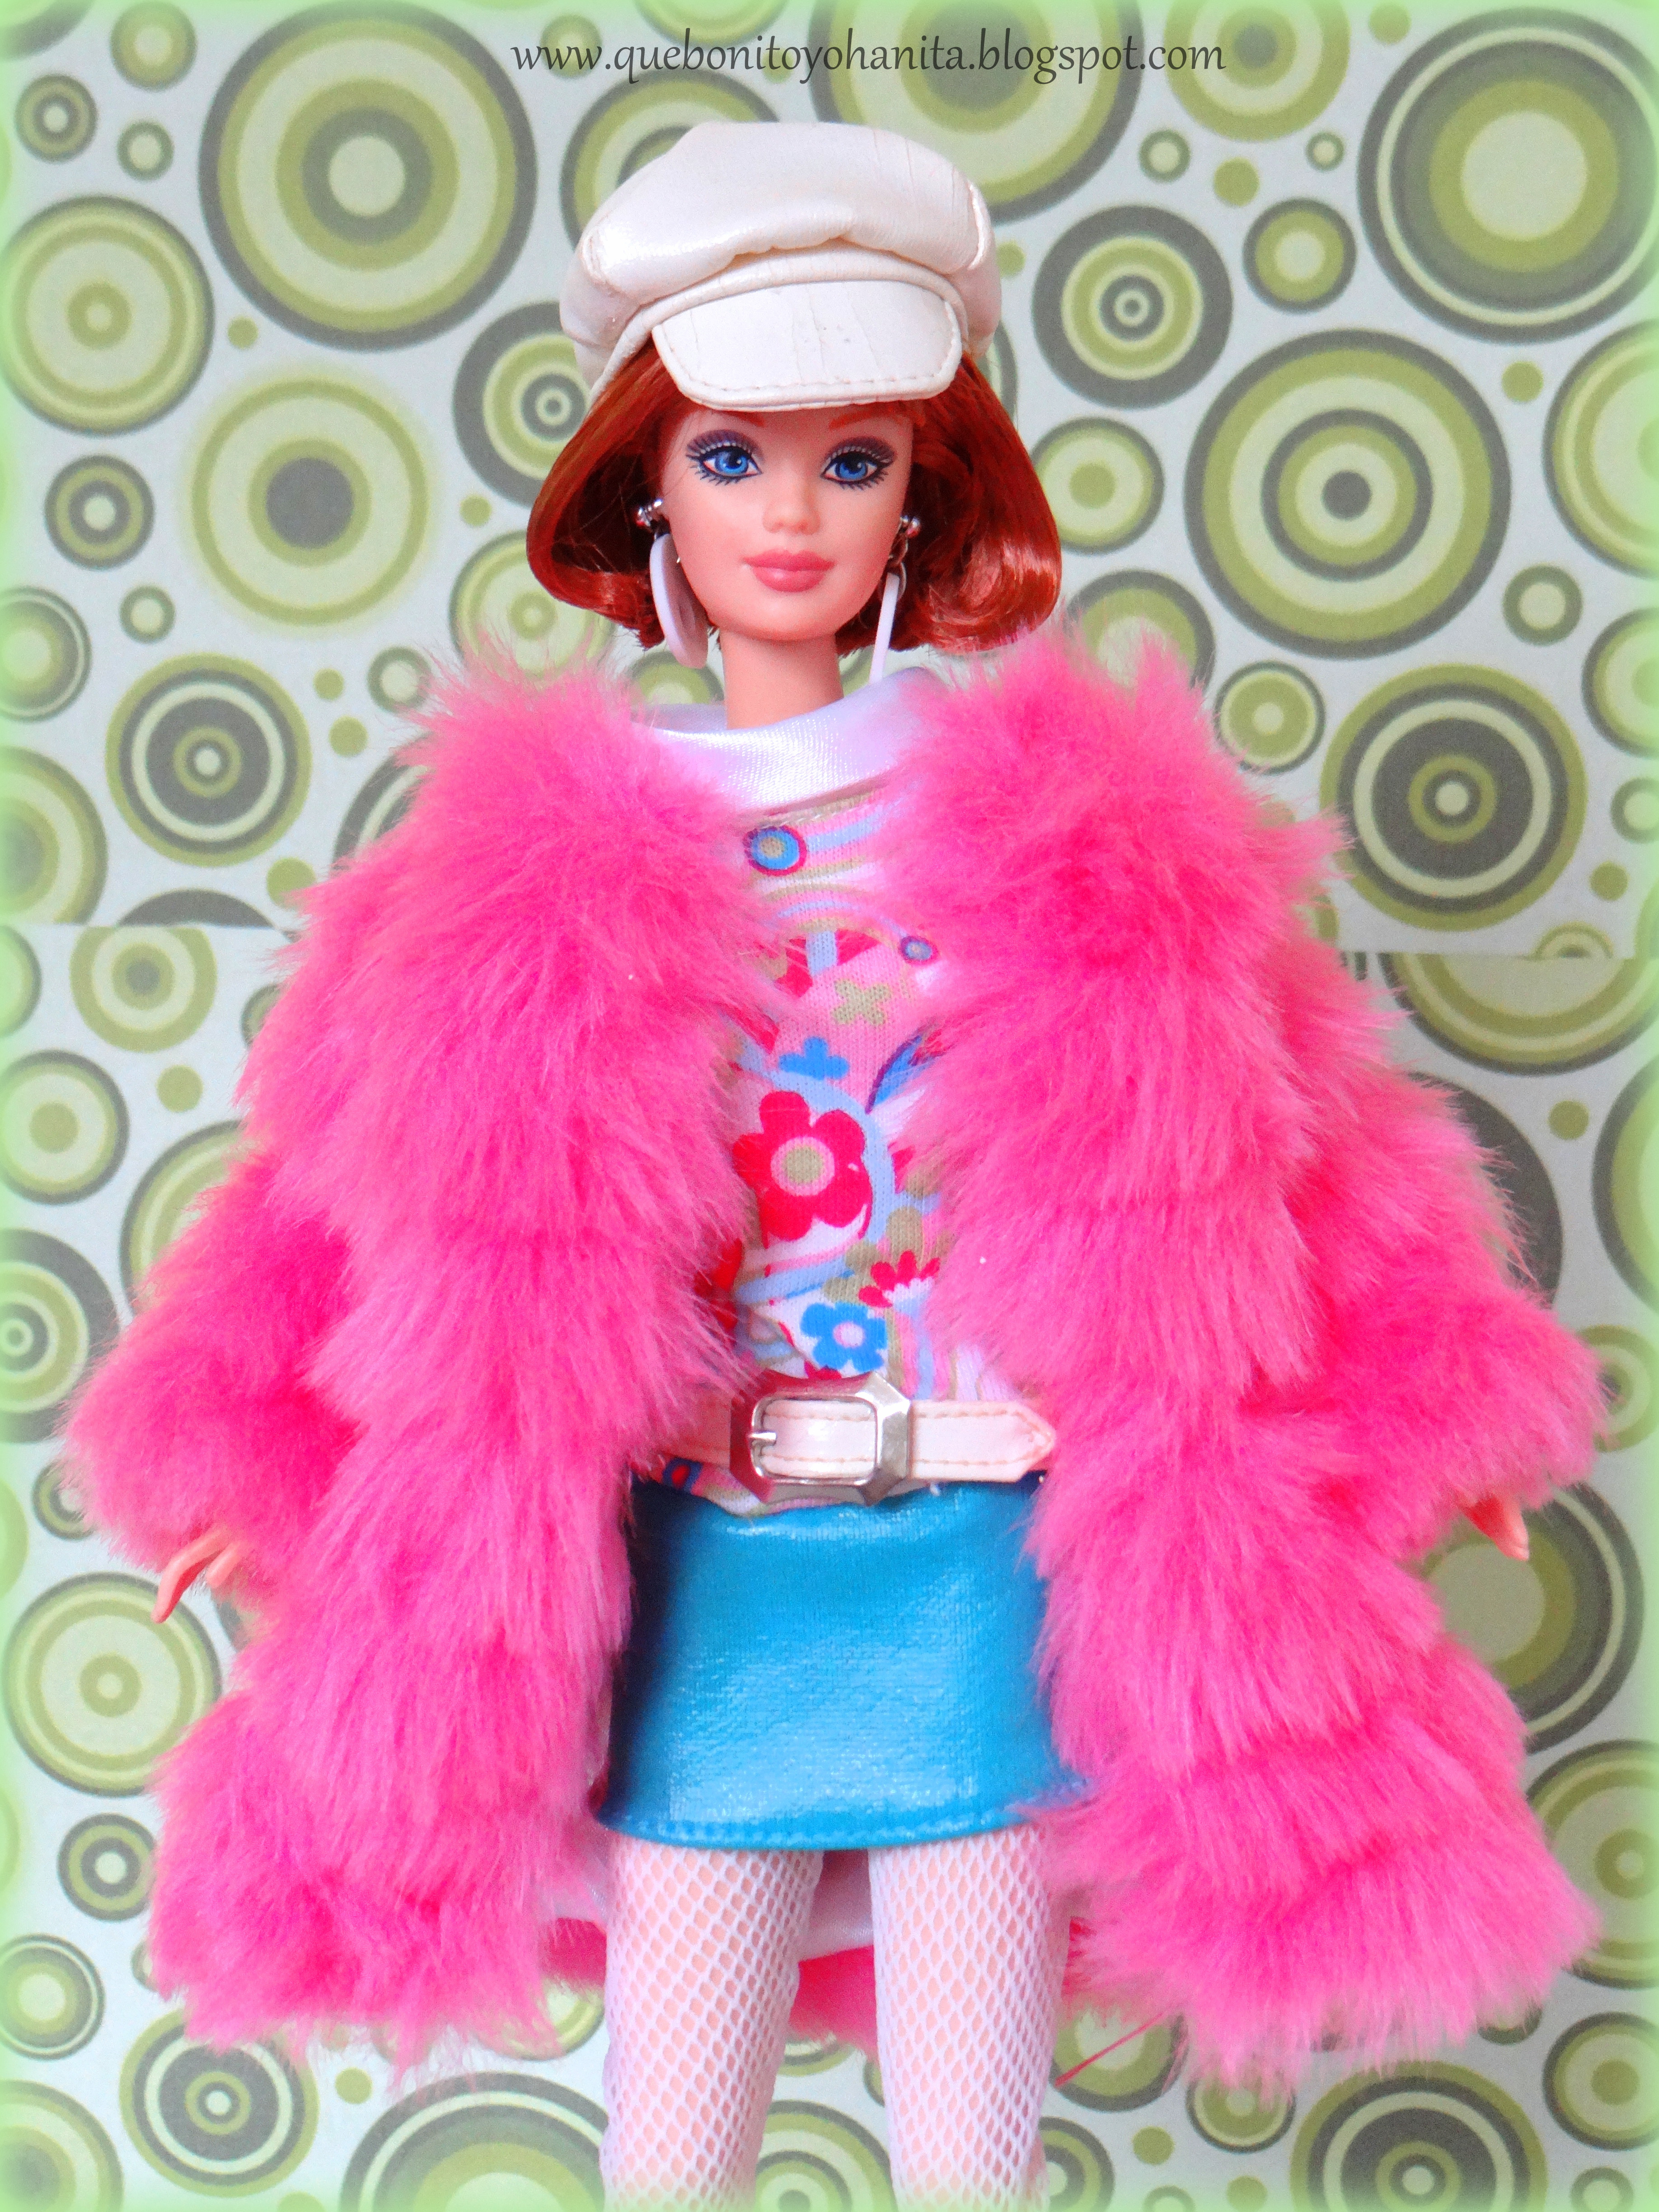 maak het plat Elastisch Voorvoegsel que bonito Yohanita!: Barbie Groovy 60's